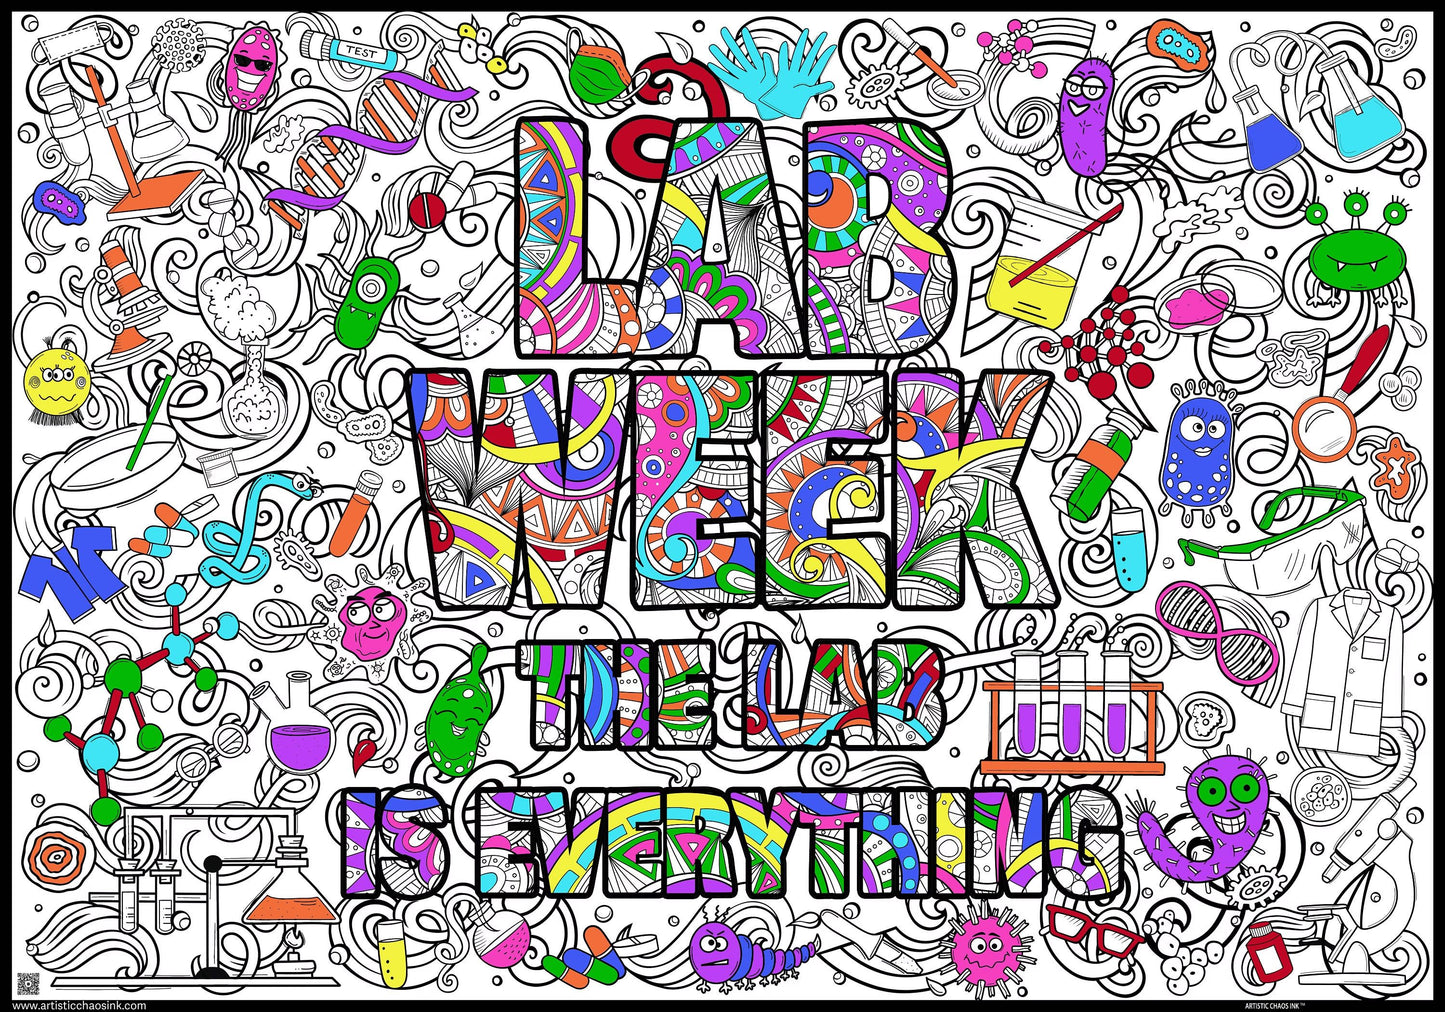 labweekwiththemecolored